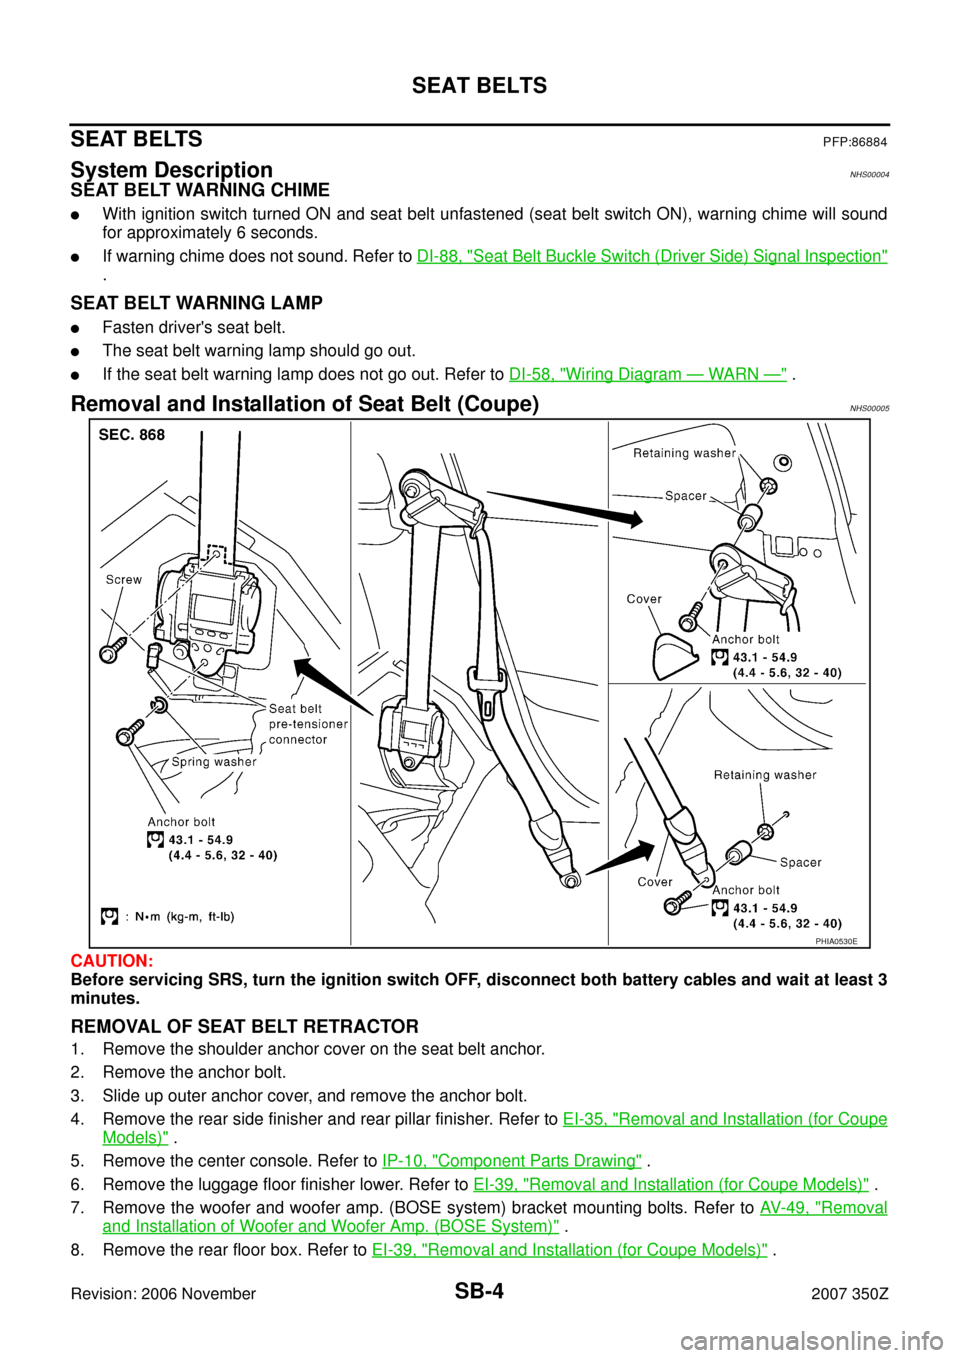 NISSAN 350Z 2007 Z33 Seat Belts Workshop Manual SB-4
SEAT BELTS
Revision: 2006 November2007 350Z
SEAT BELTSPFP:86884
System DescriptionNHS00004
SEAT BELT WARNING CHIME
With ignition switch turned ON and seat belt unfastened (seat belt switch ON), 